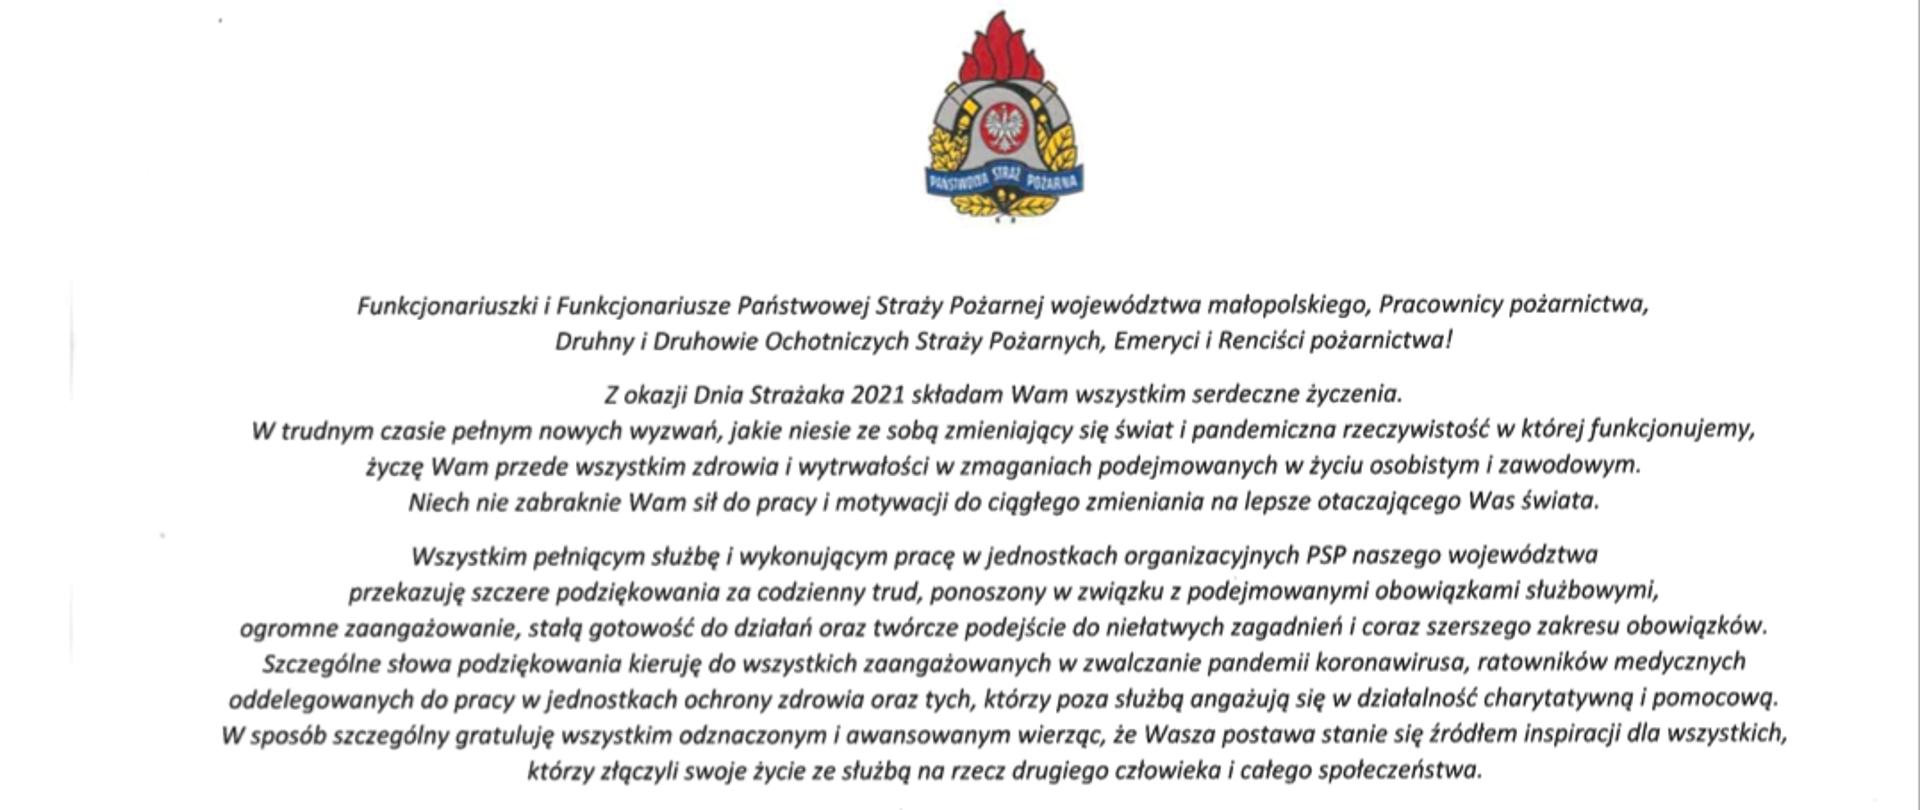 Życzenia z okazji Dnia Strażaka 2021 Małopolskiego Komendanta Wojewódzkiego PSP